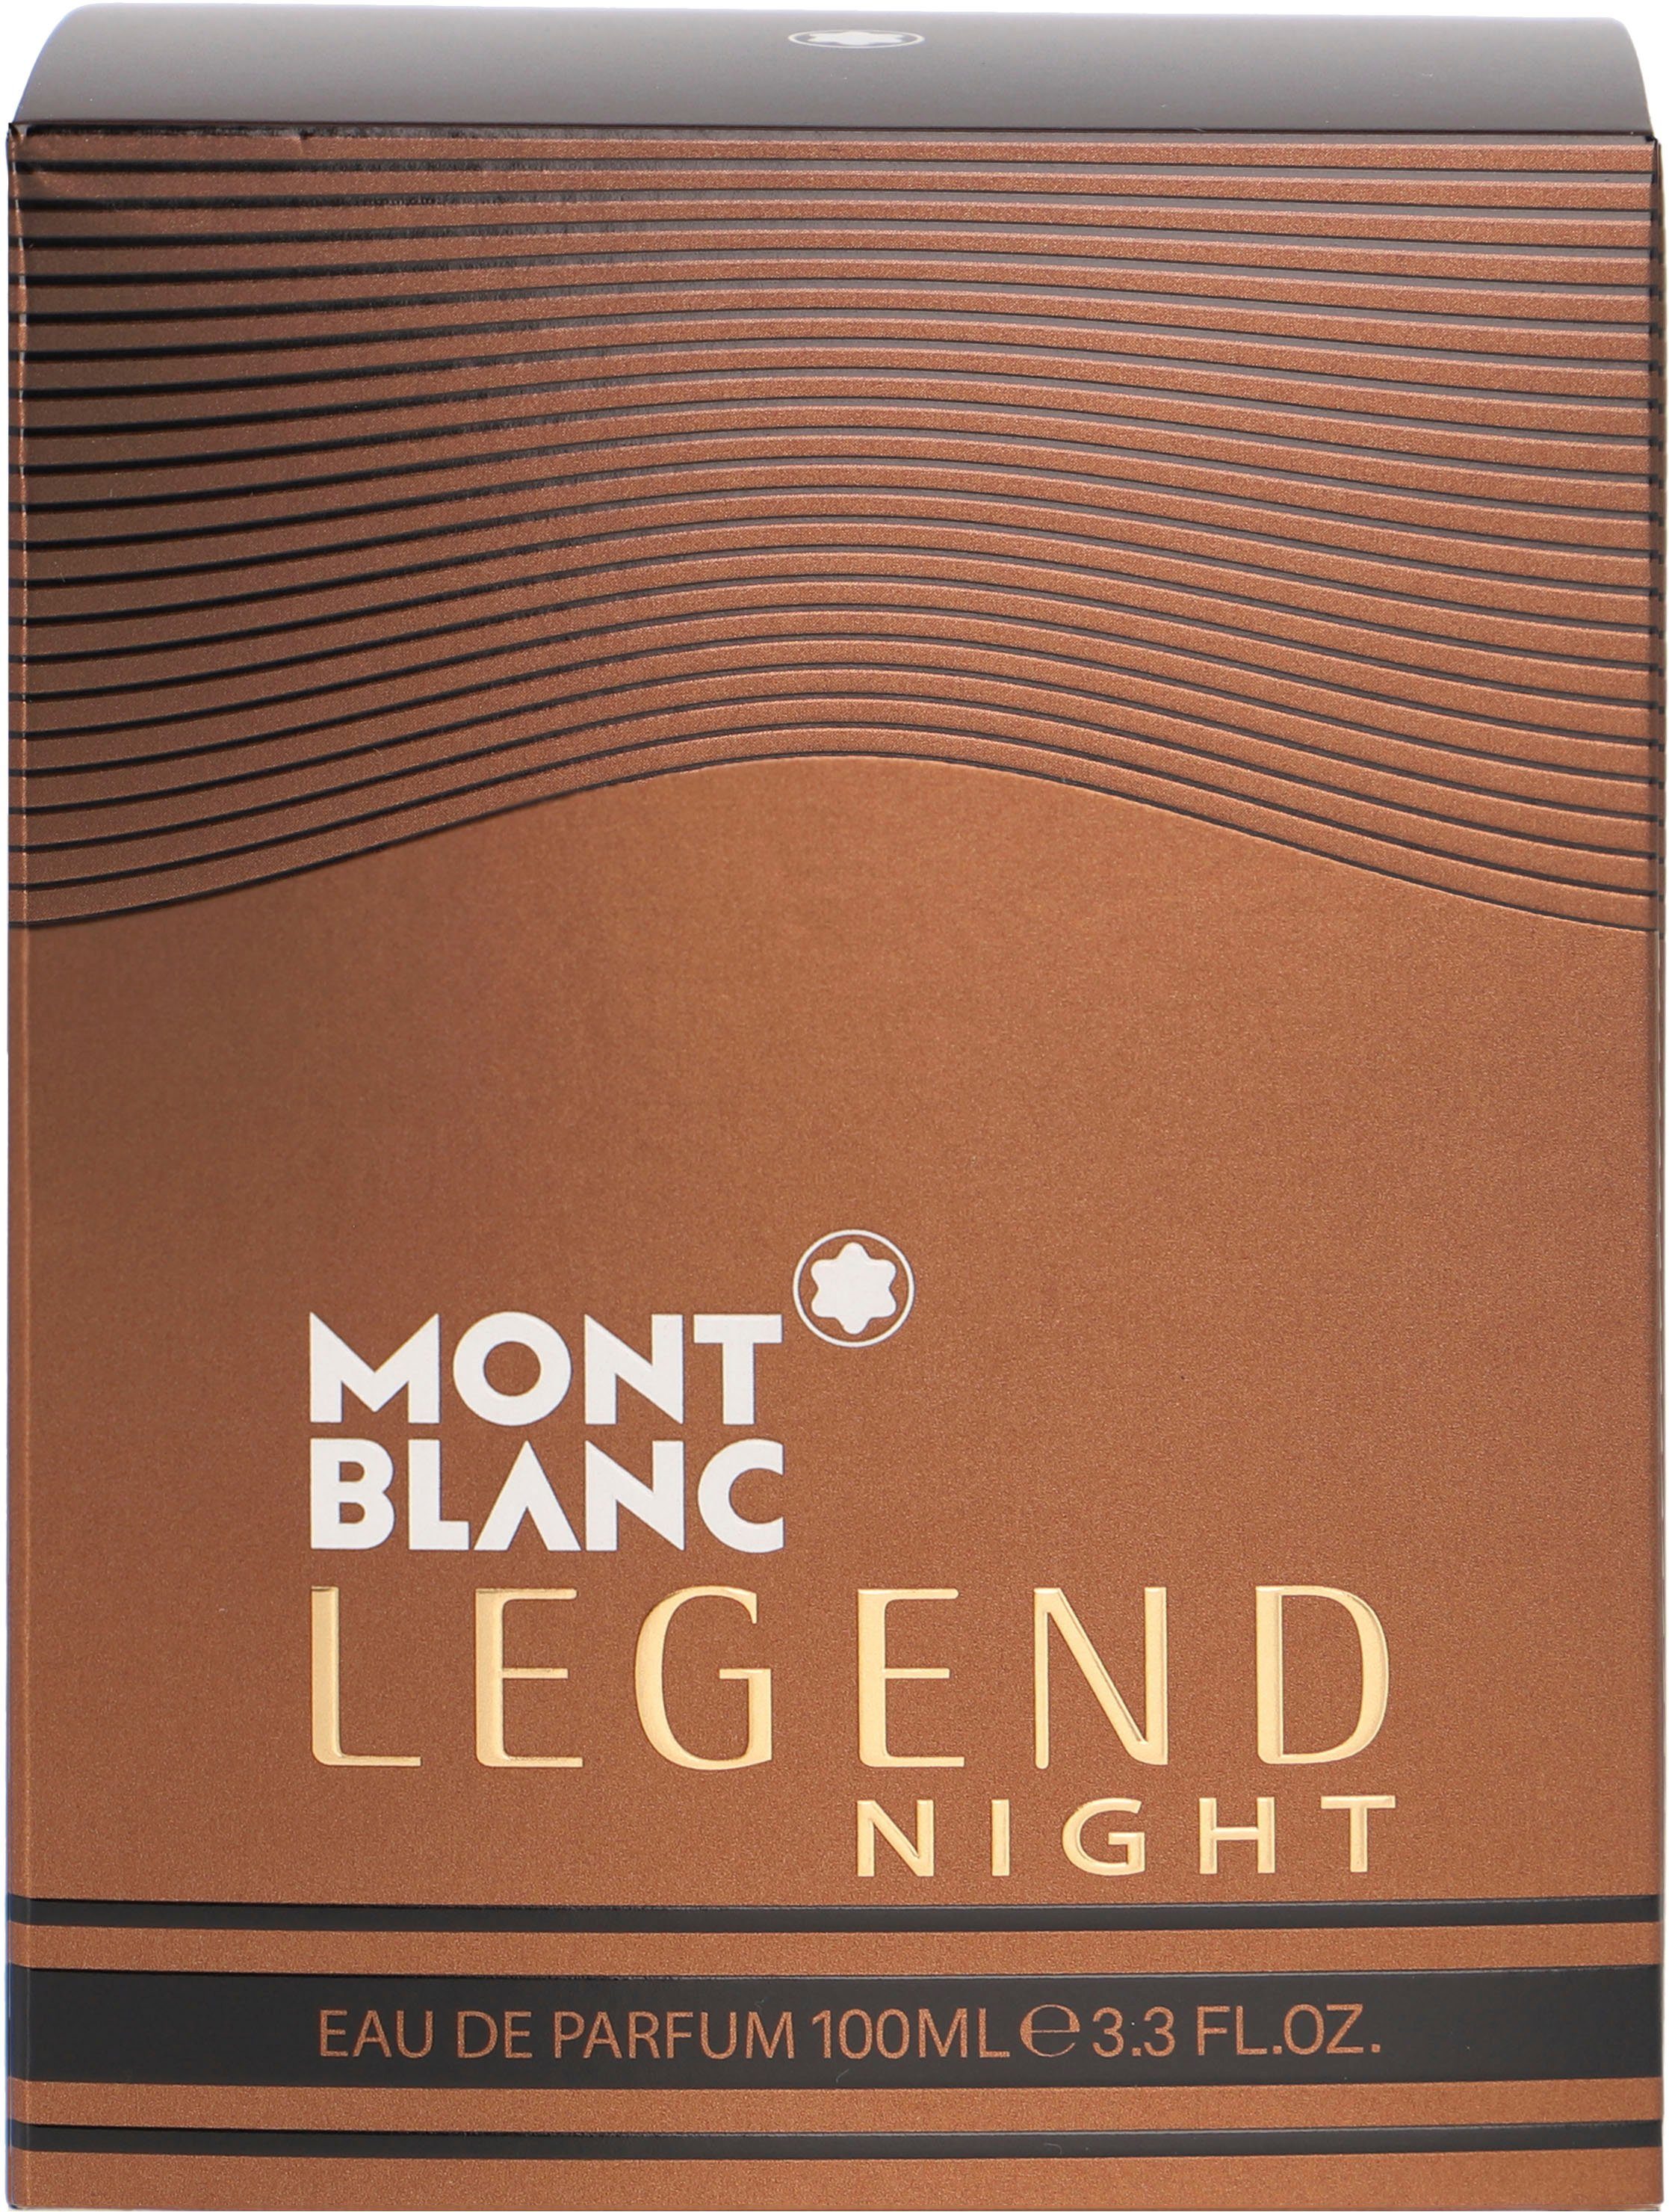 Eau Parfum de Legend Night MONTBLANC